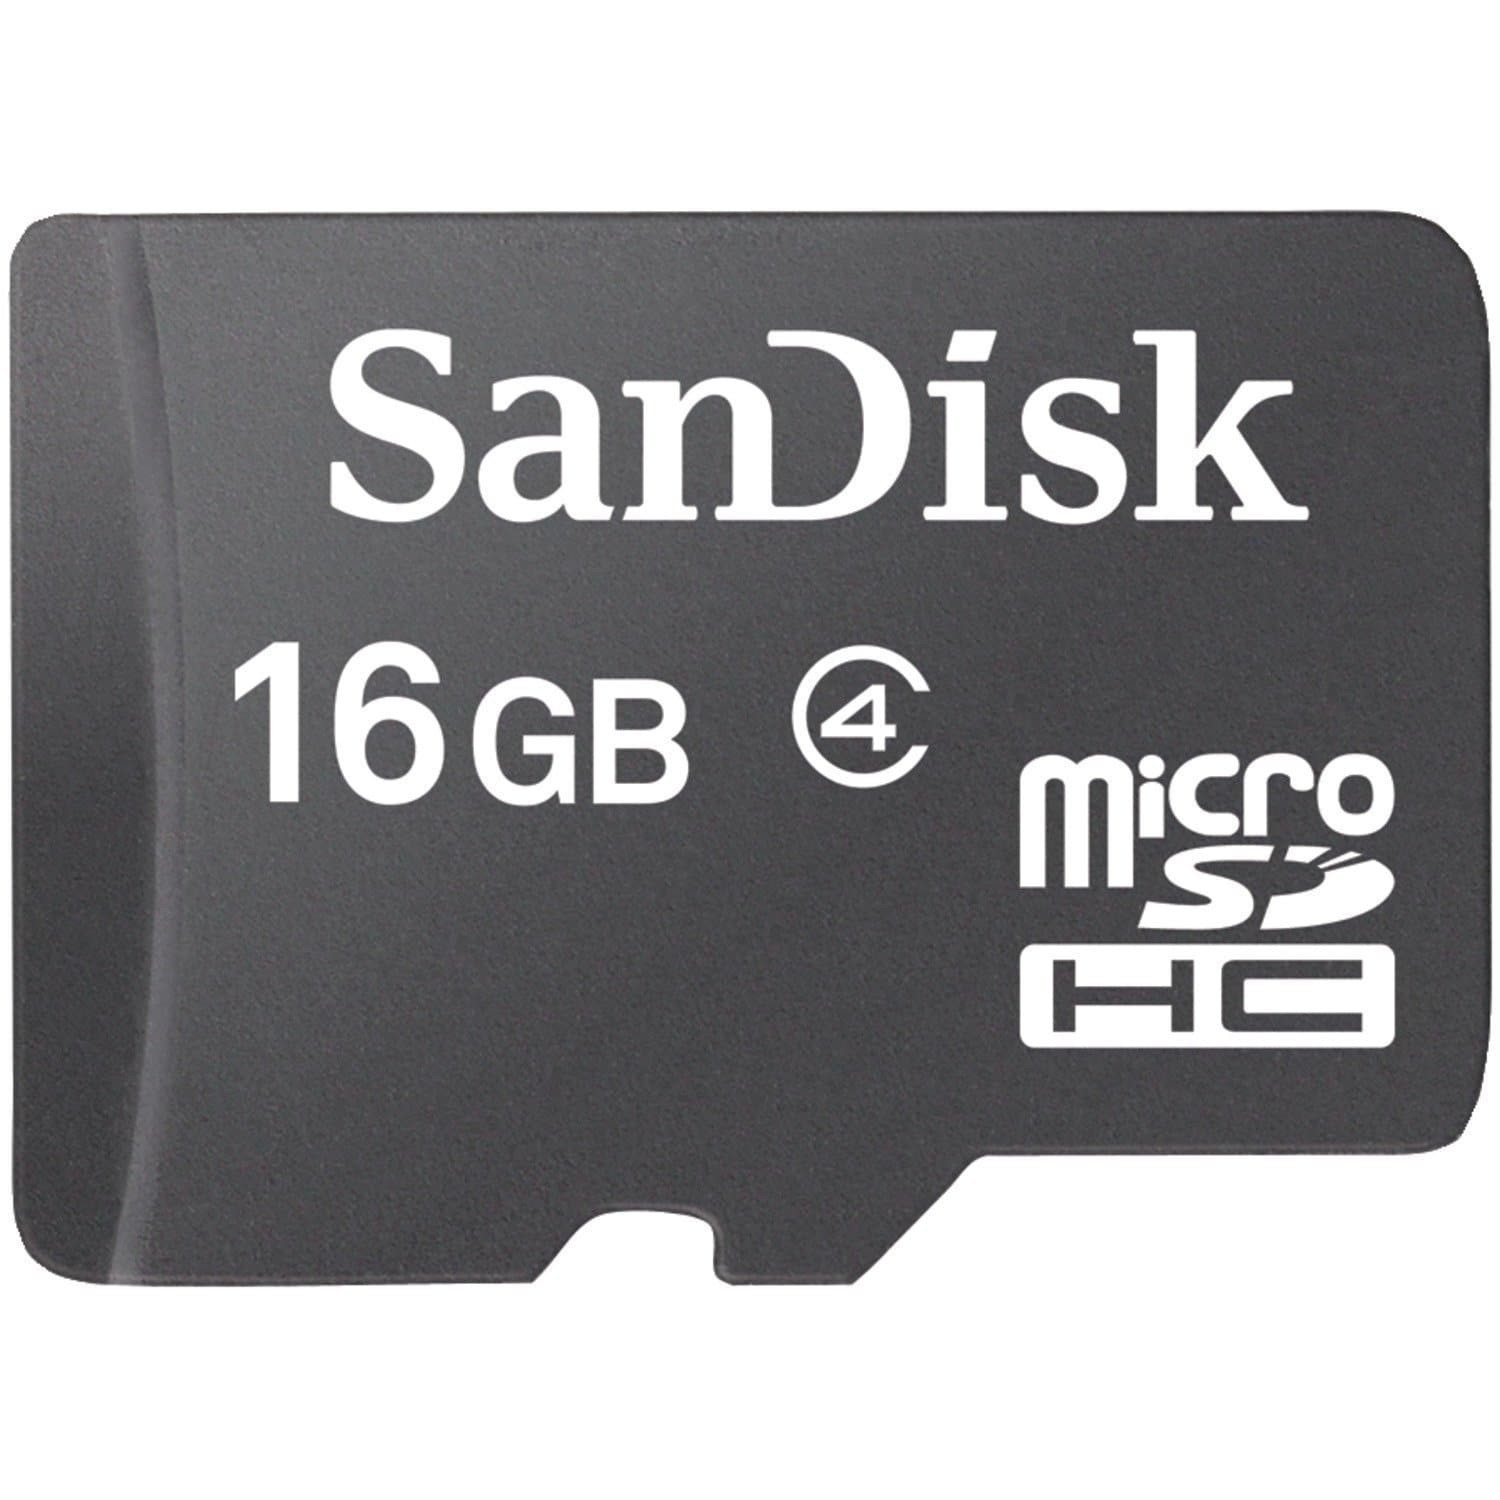 ذاكرة تخزين ساندسك SANDISK-16GB